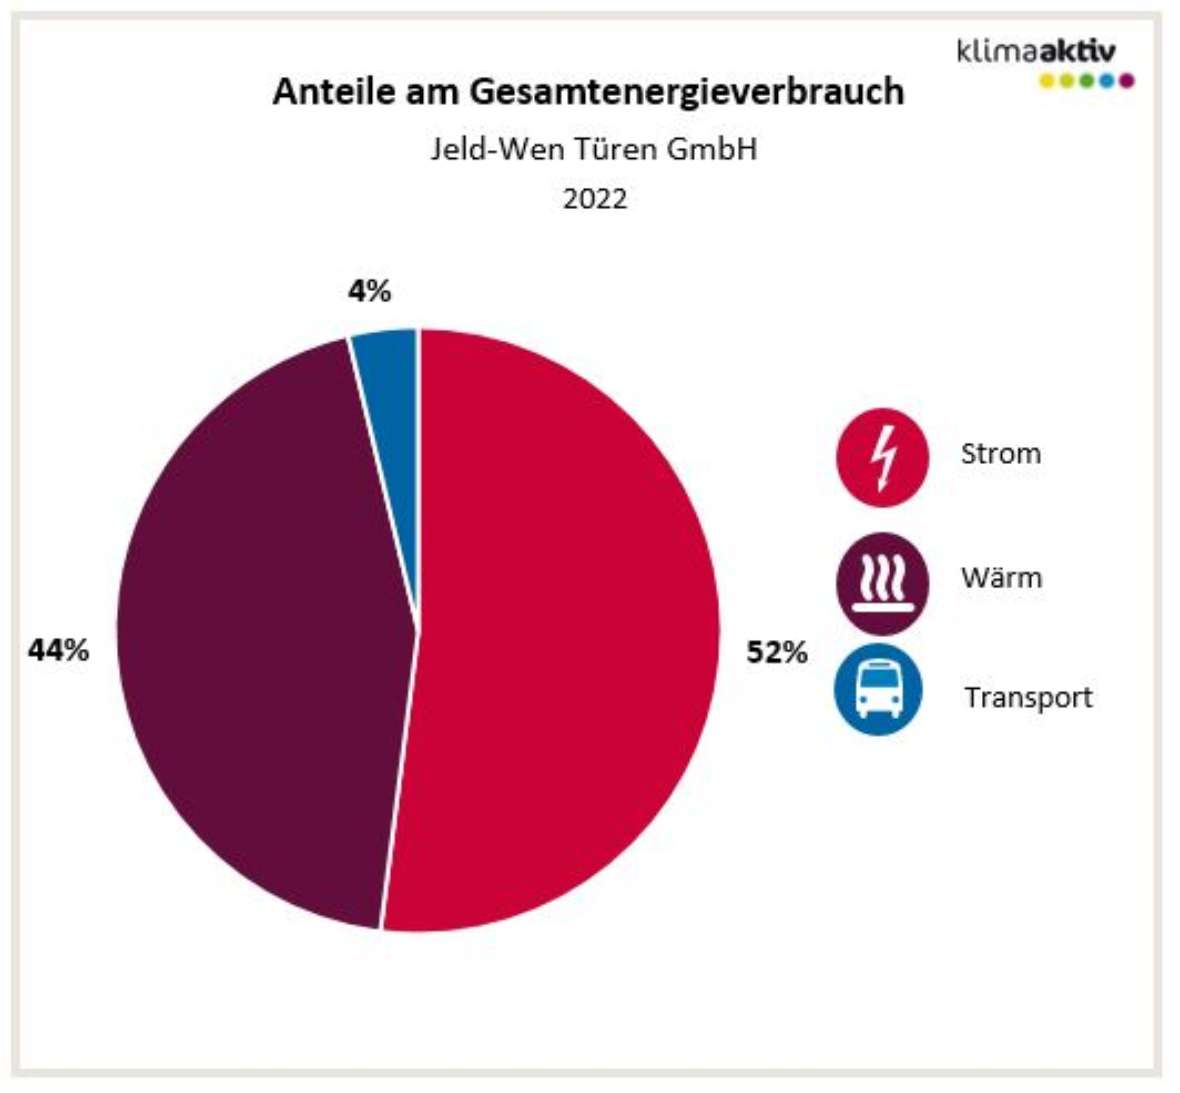 Anteile am Gesamtenergieverbrauch (Stand 2022, JELD-WEN) Strom 52 %, Wärme 44 % und Transport 4 %